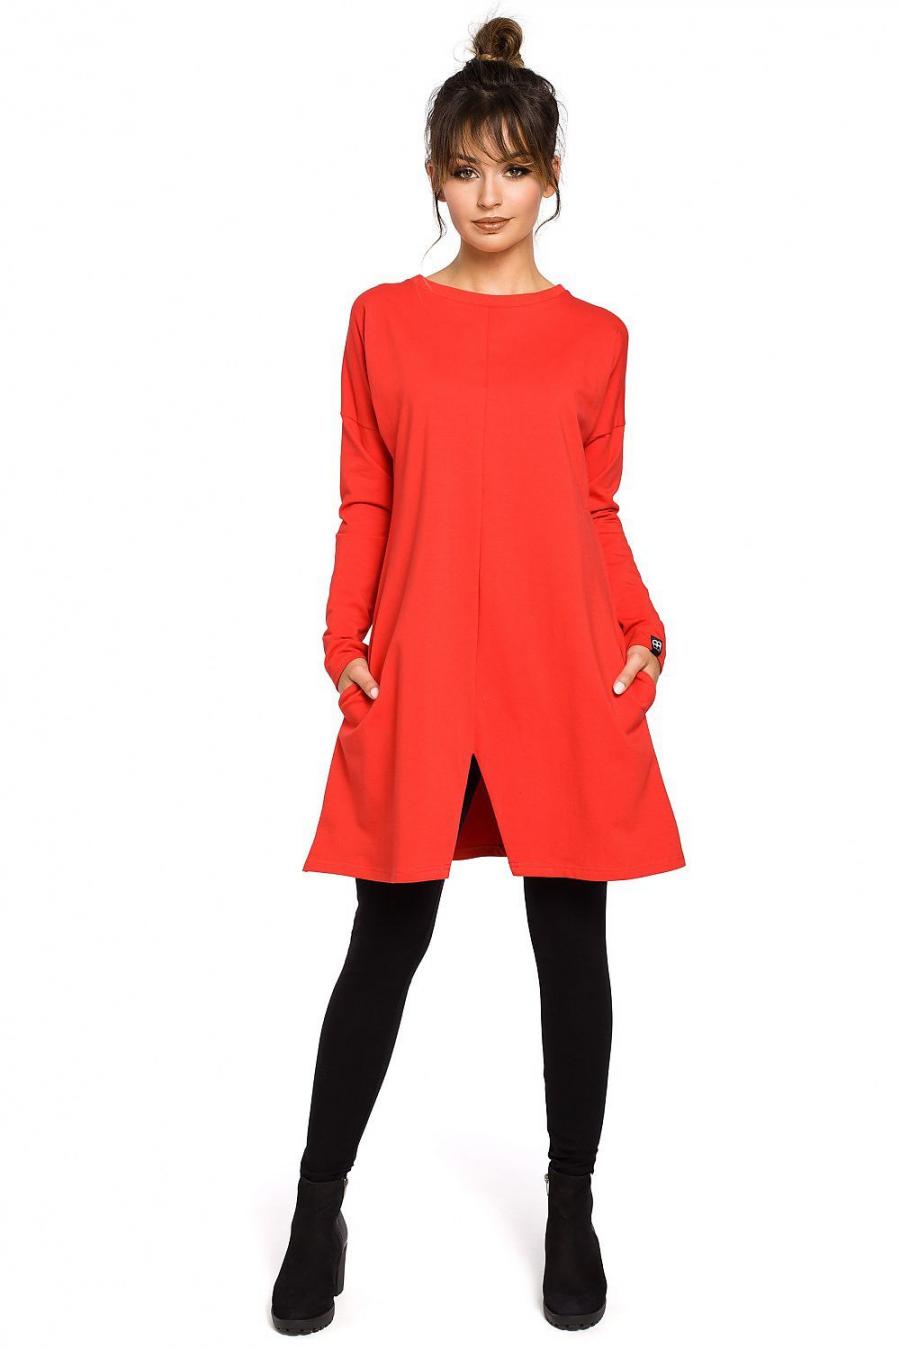 Ostatní značky šaty dámské 104253 - červená - velikost S/M